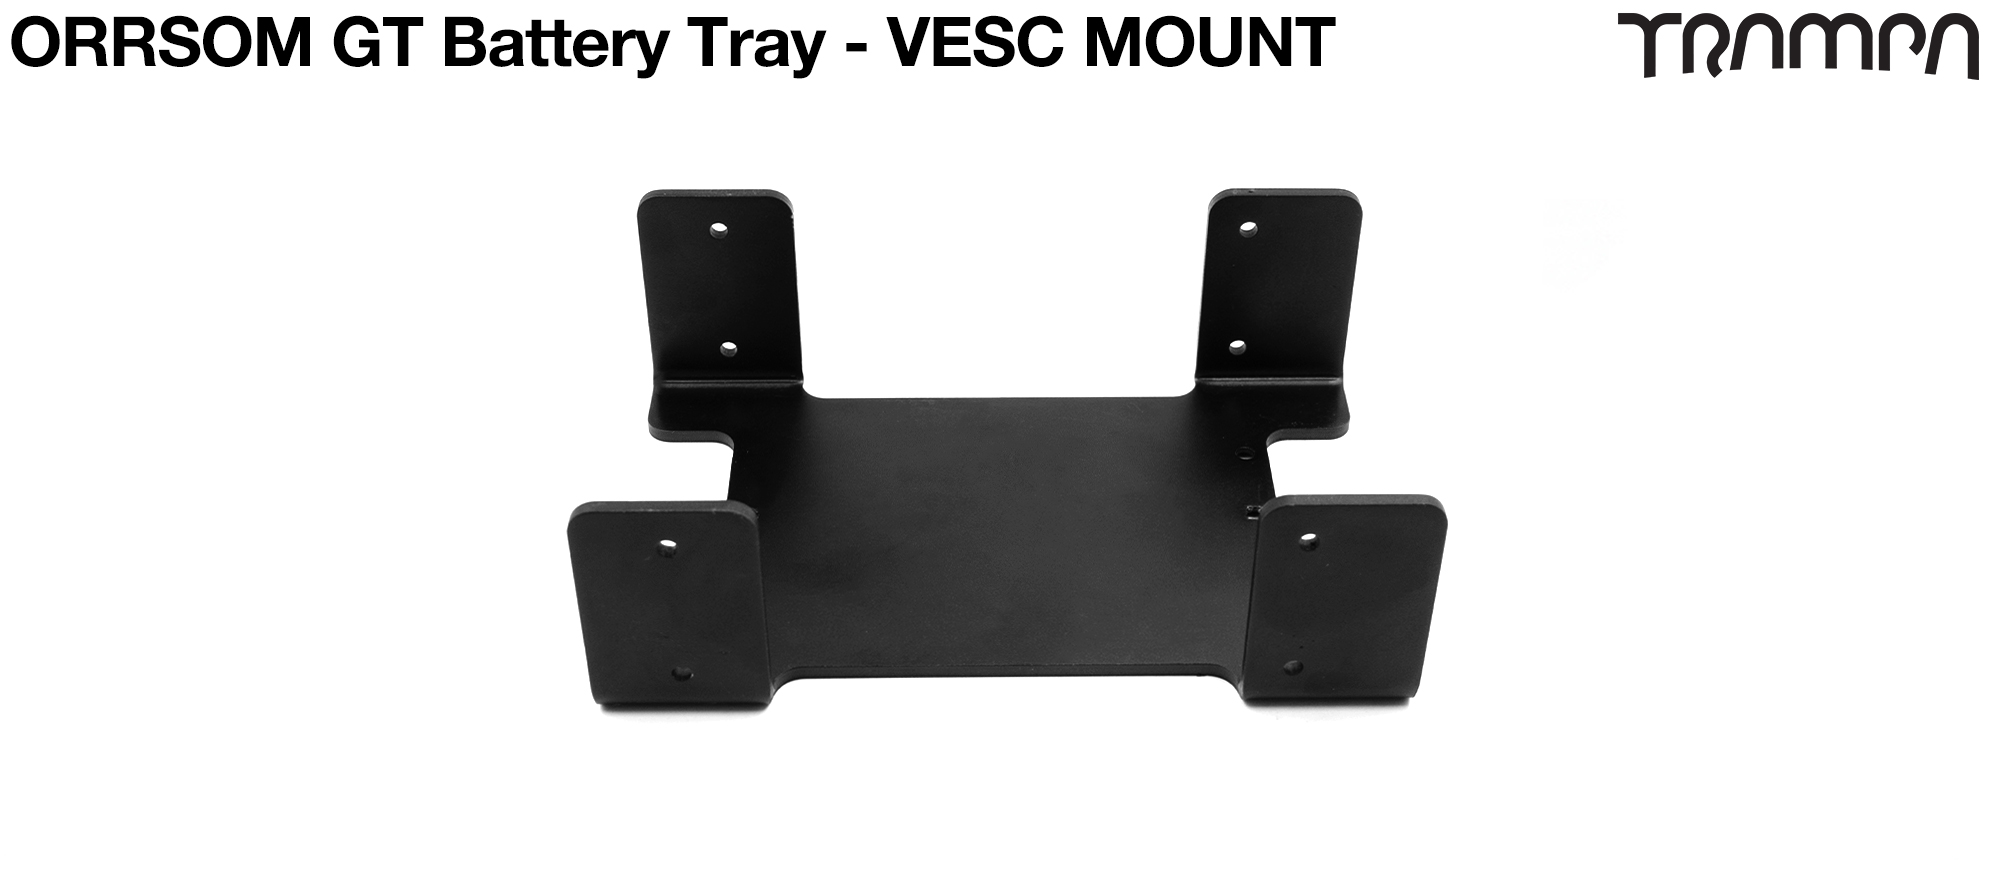 ORRSOM GT Underboard Battery Tray - VESC MOUNT